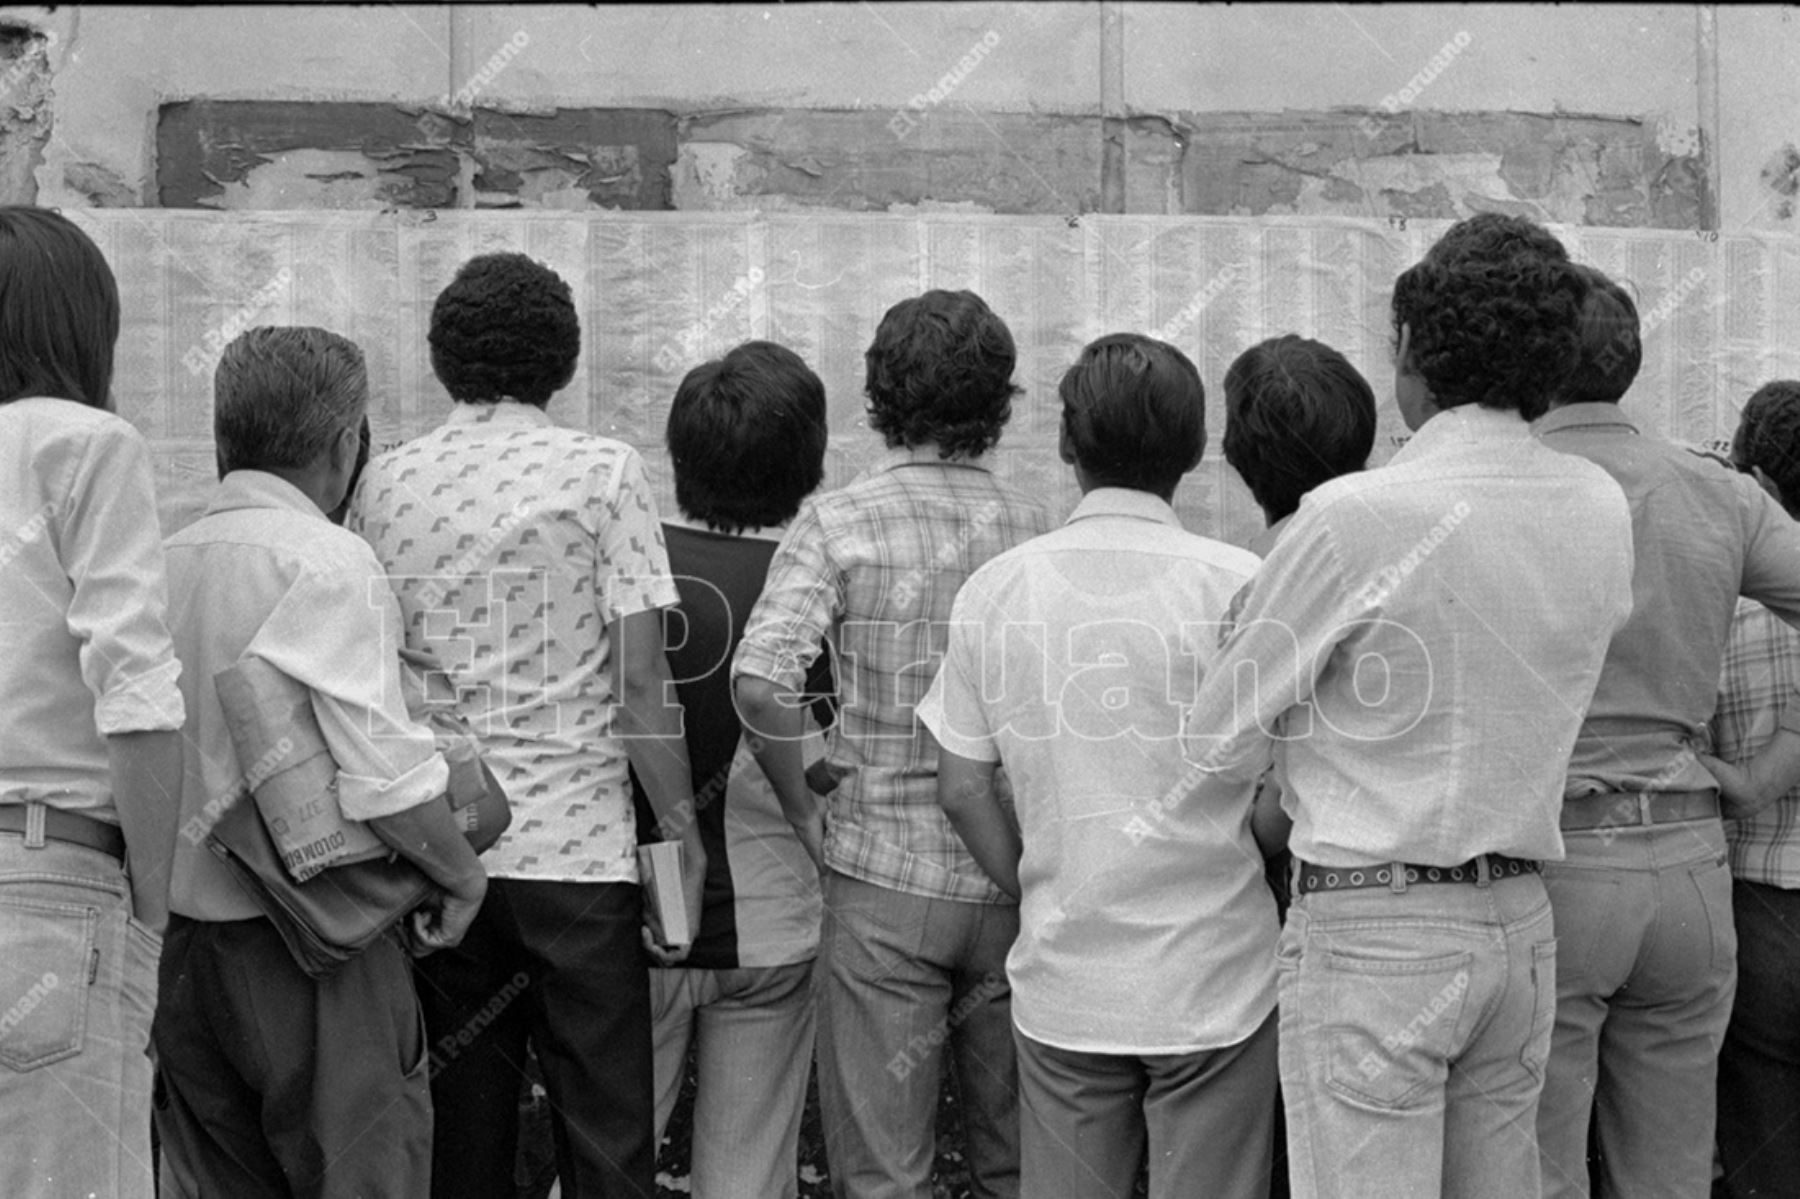 Lima - 9 abril 1980 / Postulantes a la Universidad Nacional Mayor de San Marcos leen las listas de ingresantes pegadas en la pared de un centro educativo donde rindieron la prueba. Foto: Archivo Histórico de El Peruano / José Risco